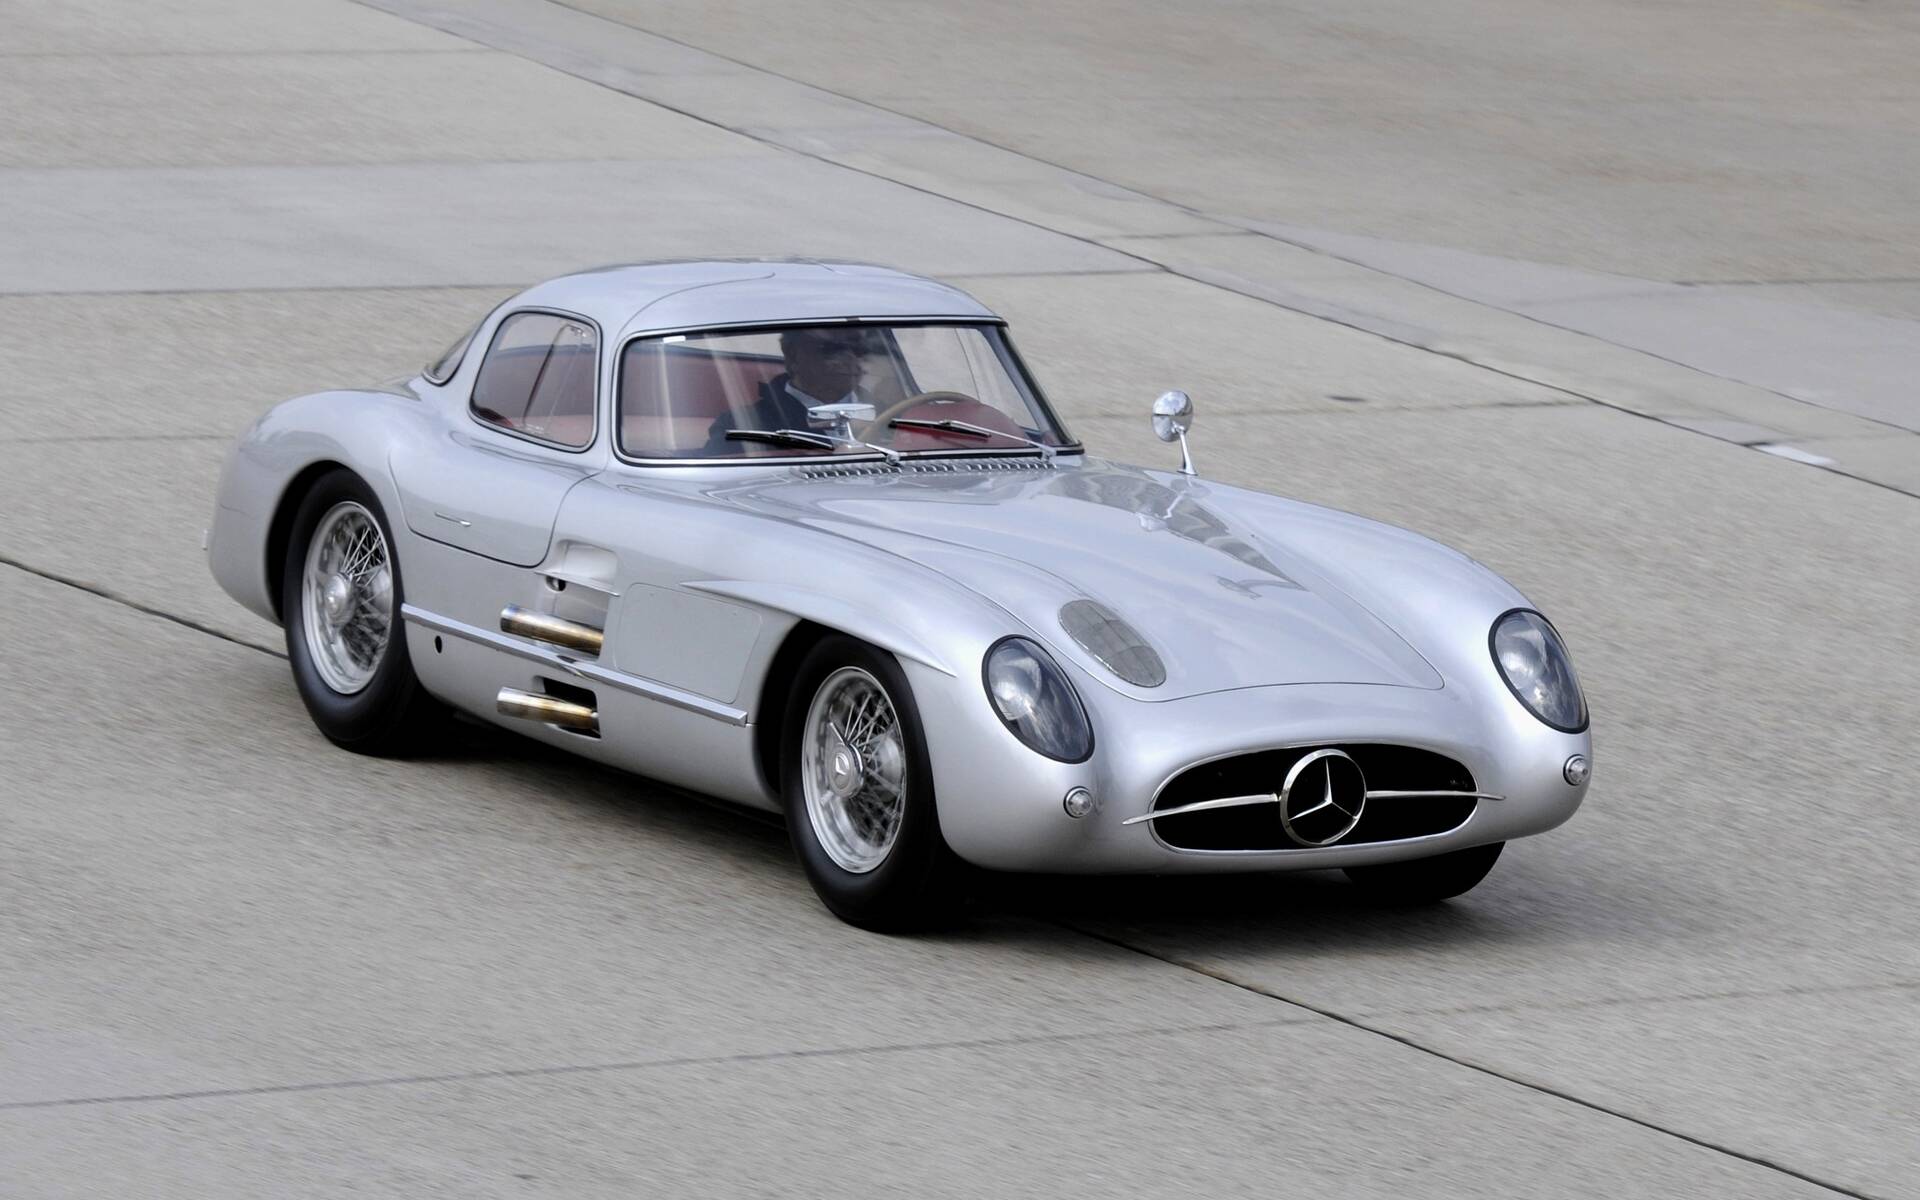 Une Mercedes-Benz Silver Arrow aurait été vendue pour 182 M$ 524042-une-mercedes-benz-300-slr-uhlenhaut-1956-aurait-ete-vendue-pour-182-m